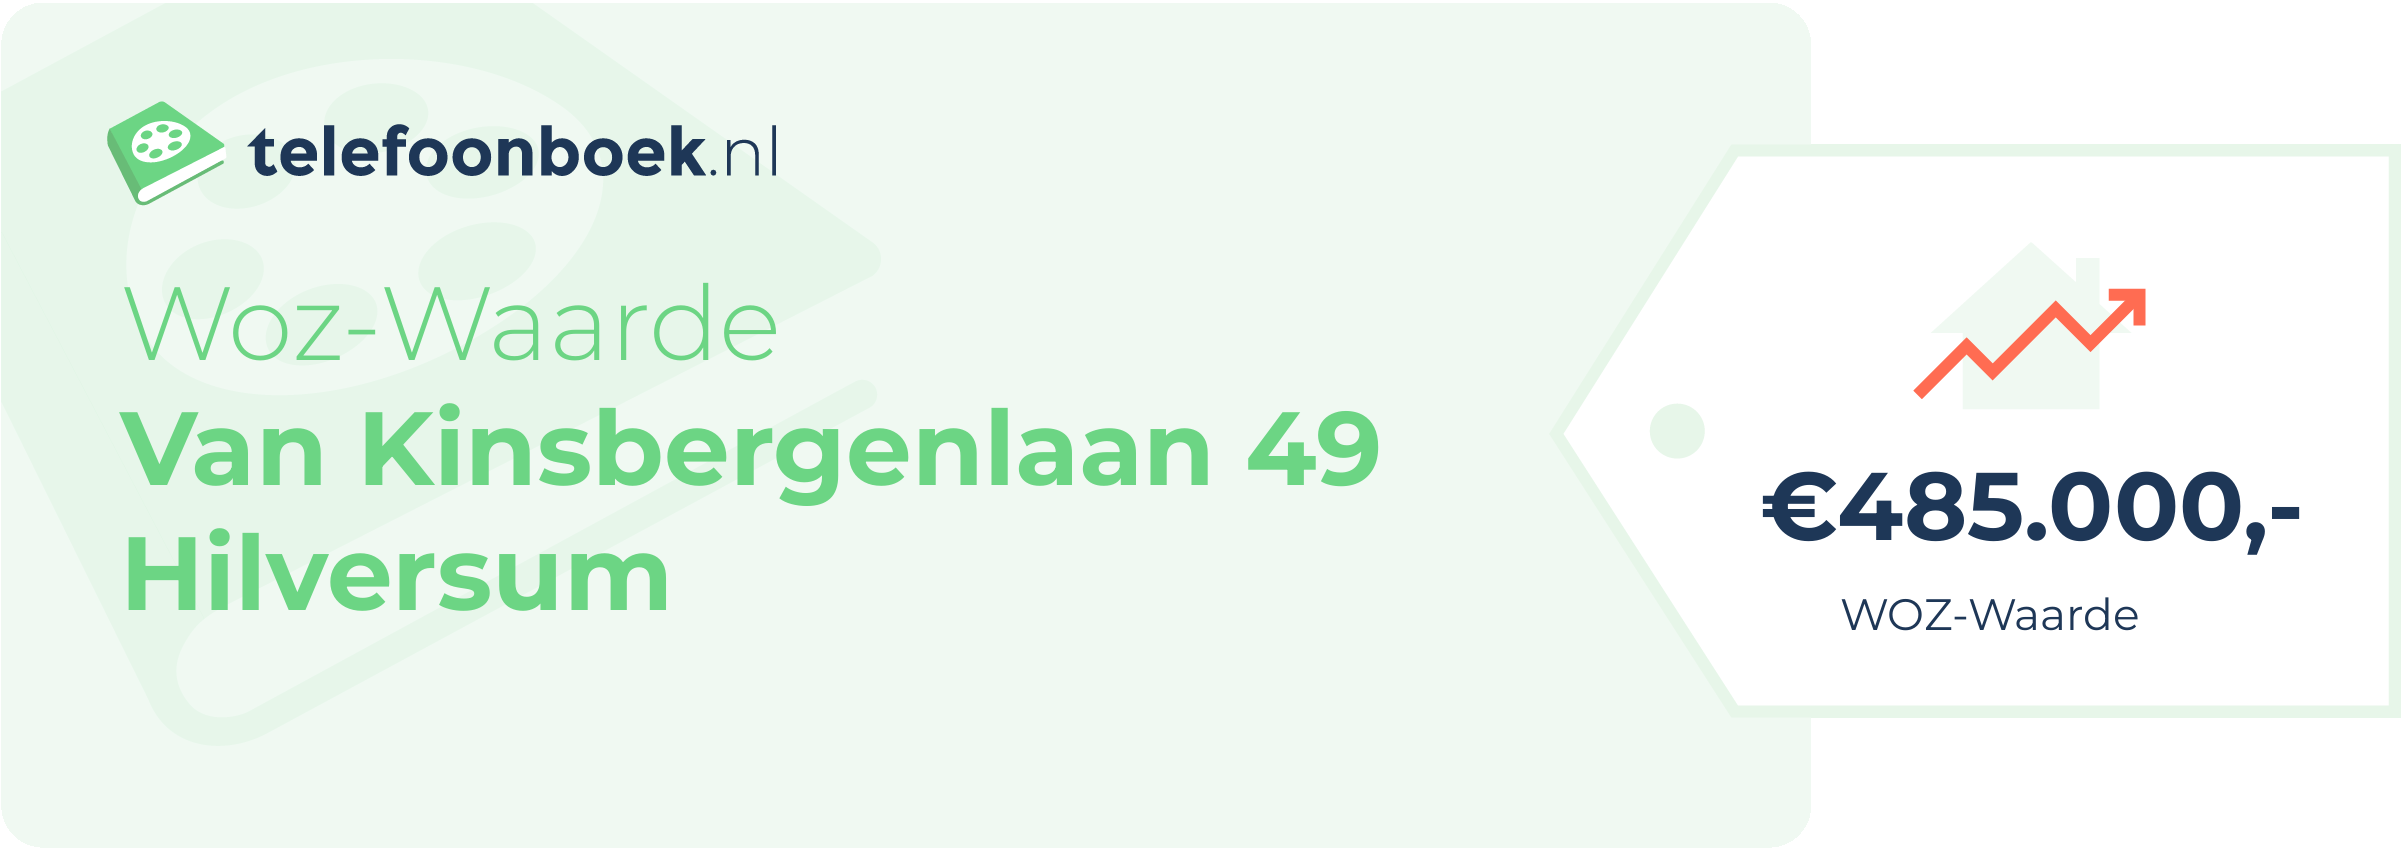 WOZ-waarde Van Kinsbergenlaan 49 Hilversum